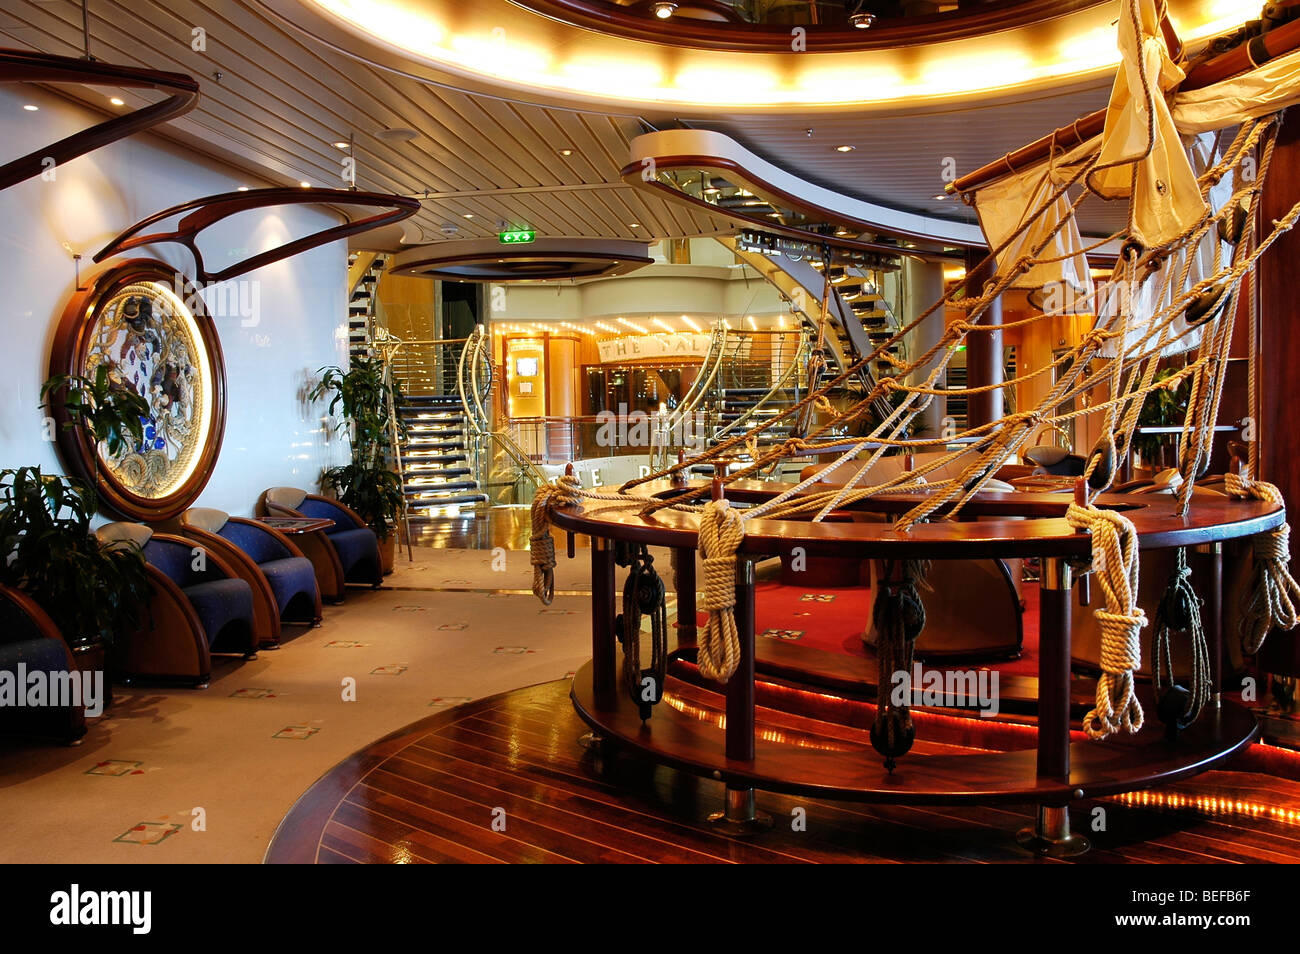 Explorer Of The Seas Cruise Ship Interior Stock Photo